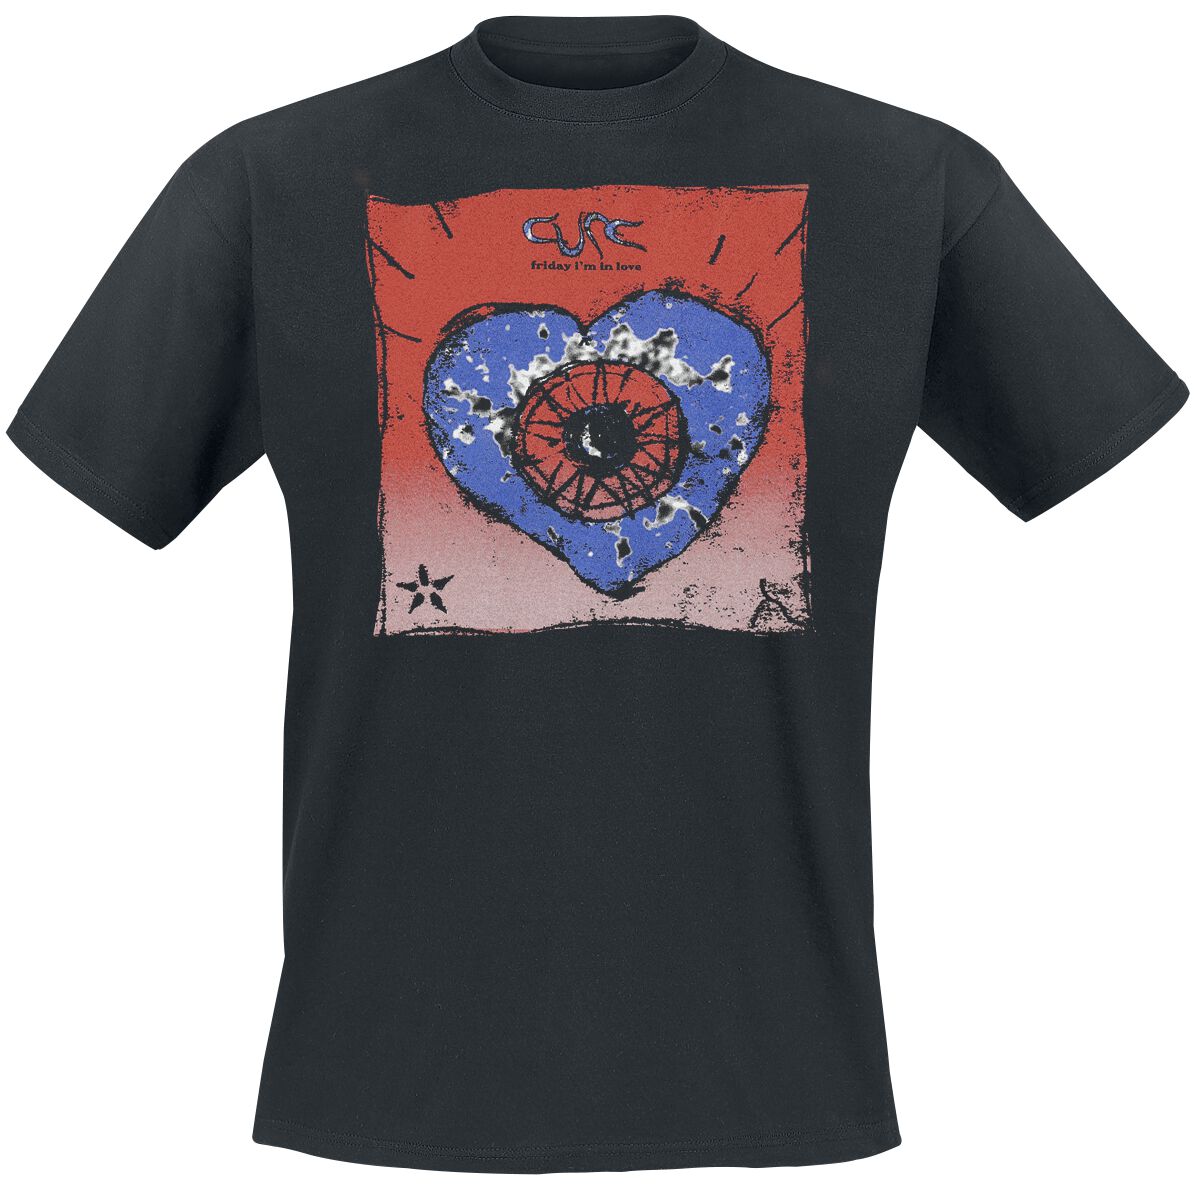 The Cure T-Shirt - Friday I`m In Love - S bis 4XL - für Männer - Größe S - schwarz  - Lizenziertes Merchandise!